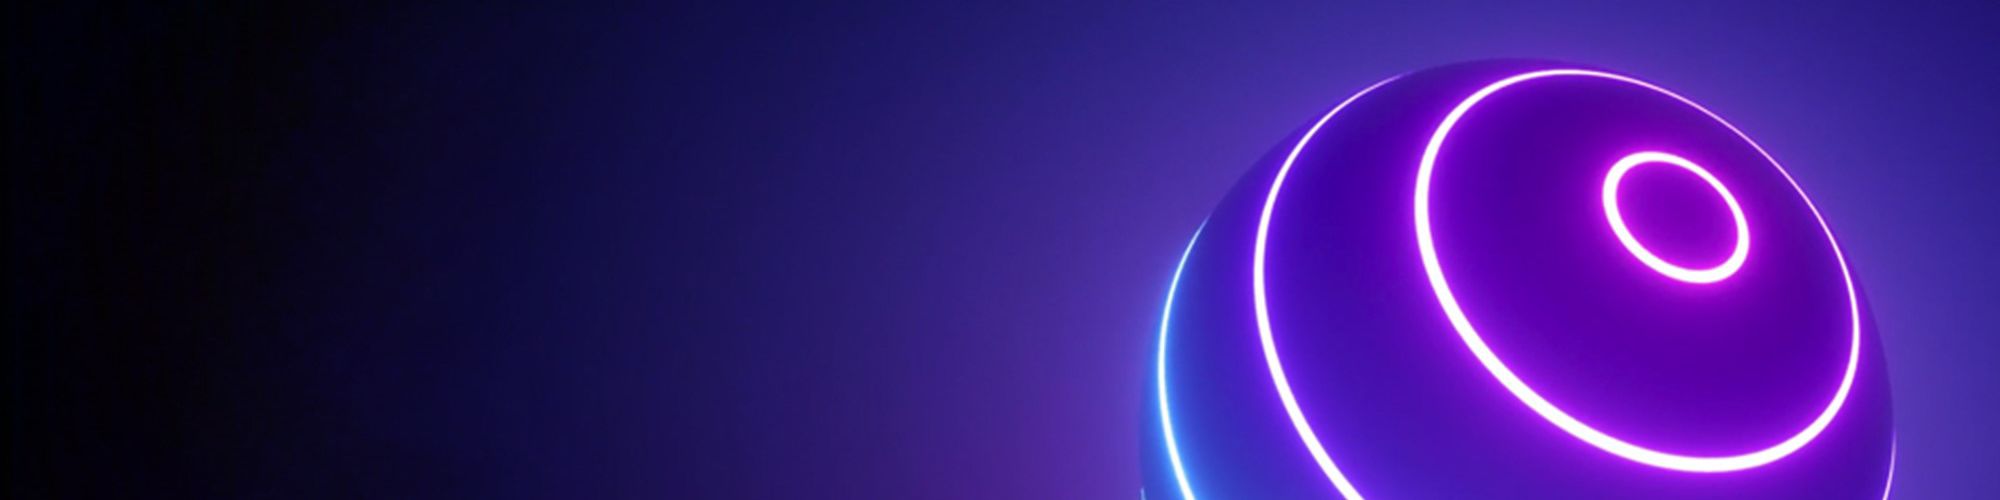 紫と青に発行する球体